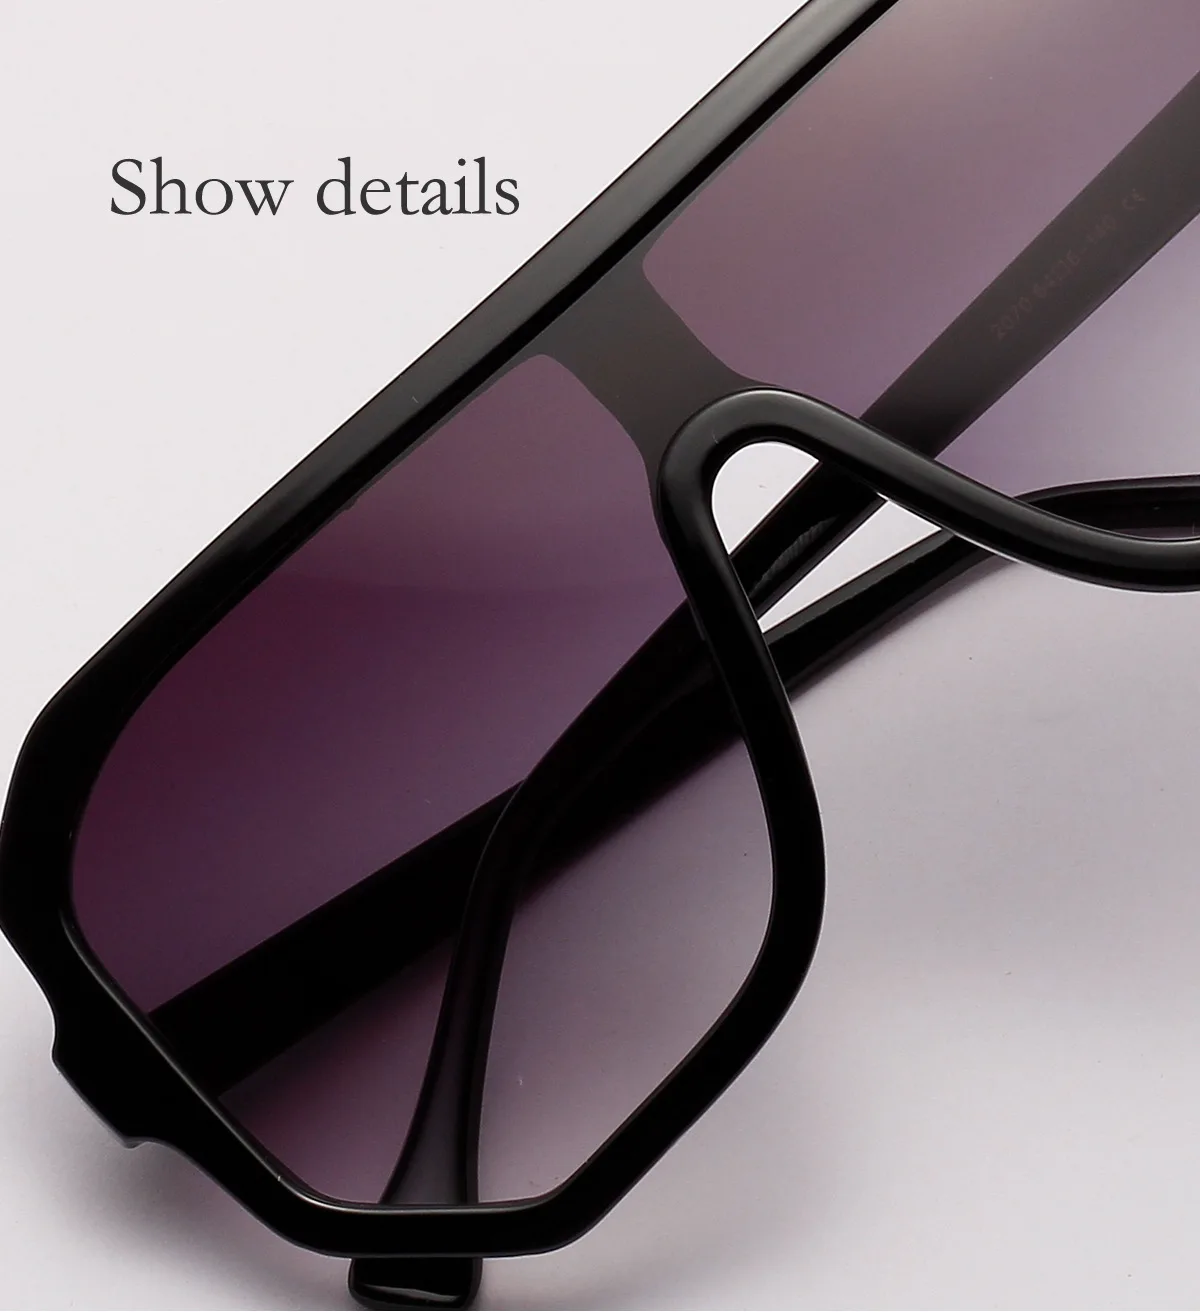 Kingswit новые модные квадратные солнцезащитные очки для женщин Роскошные дизайнерские очки большие черные тёмные очки выше размера солнцезащитные очки Oculos UV400